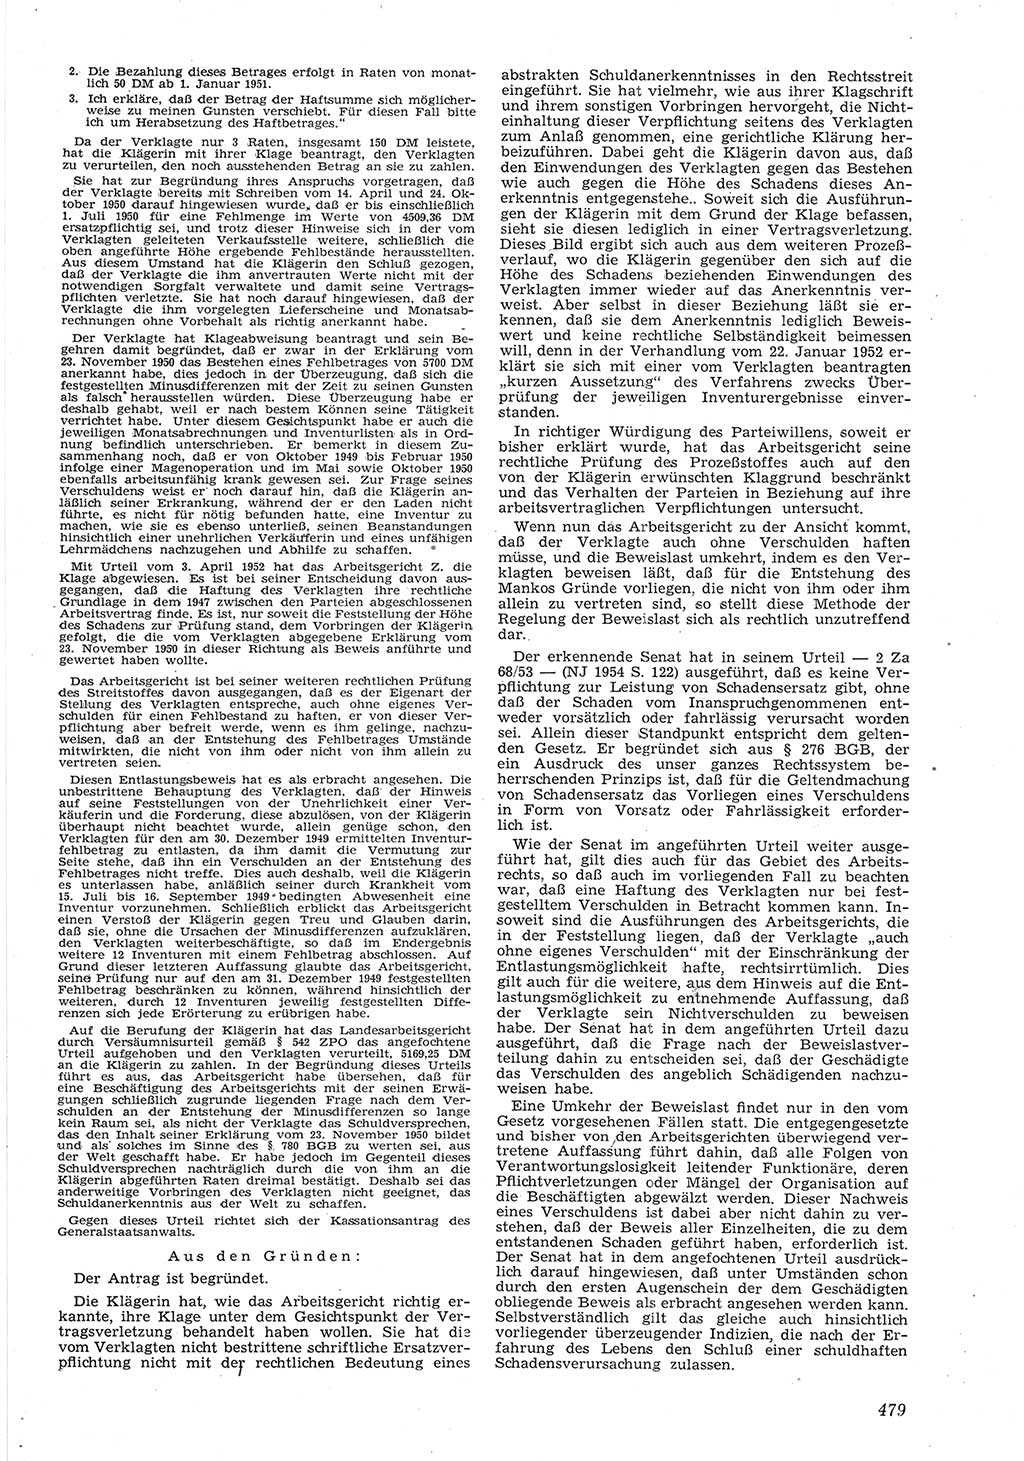 Neue Justiz (NJ), Zeitschrift für Recht und Rechtswissenschaft [Deutsche Demokratische Republik (DDR)], 8. Jahrgang 1954, Seite 479 (NJ DDR 1954, S. 479)